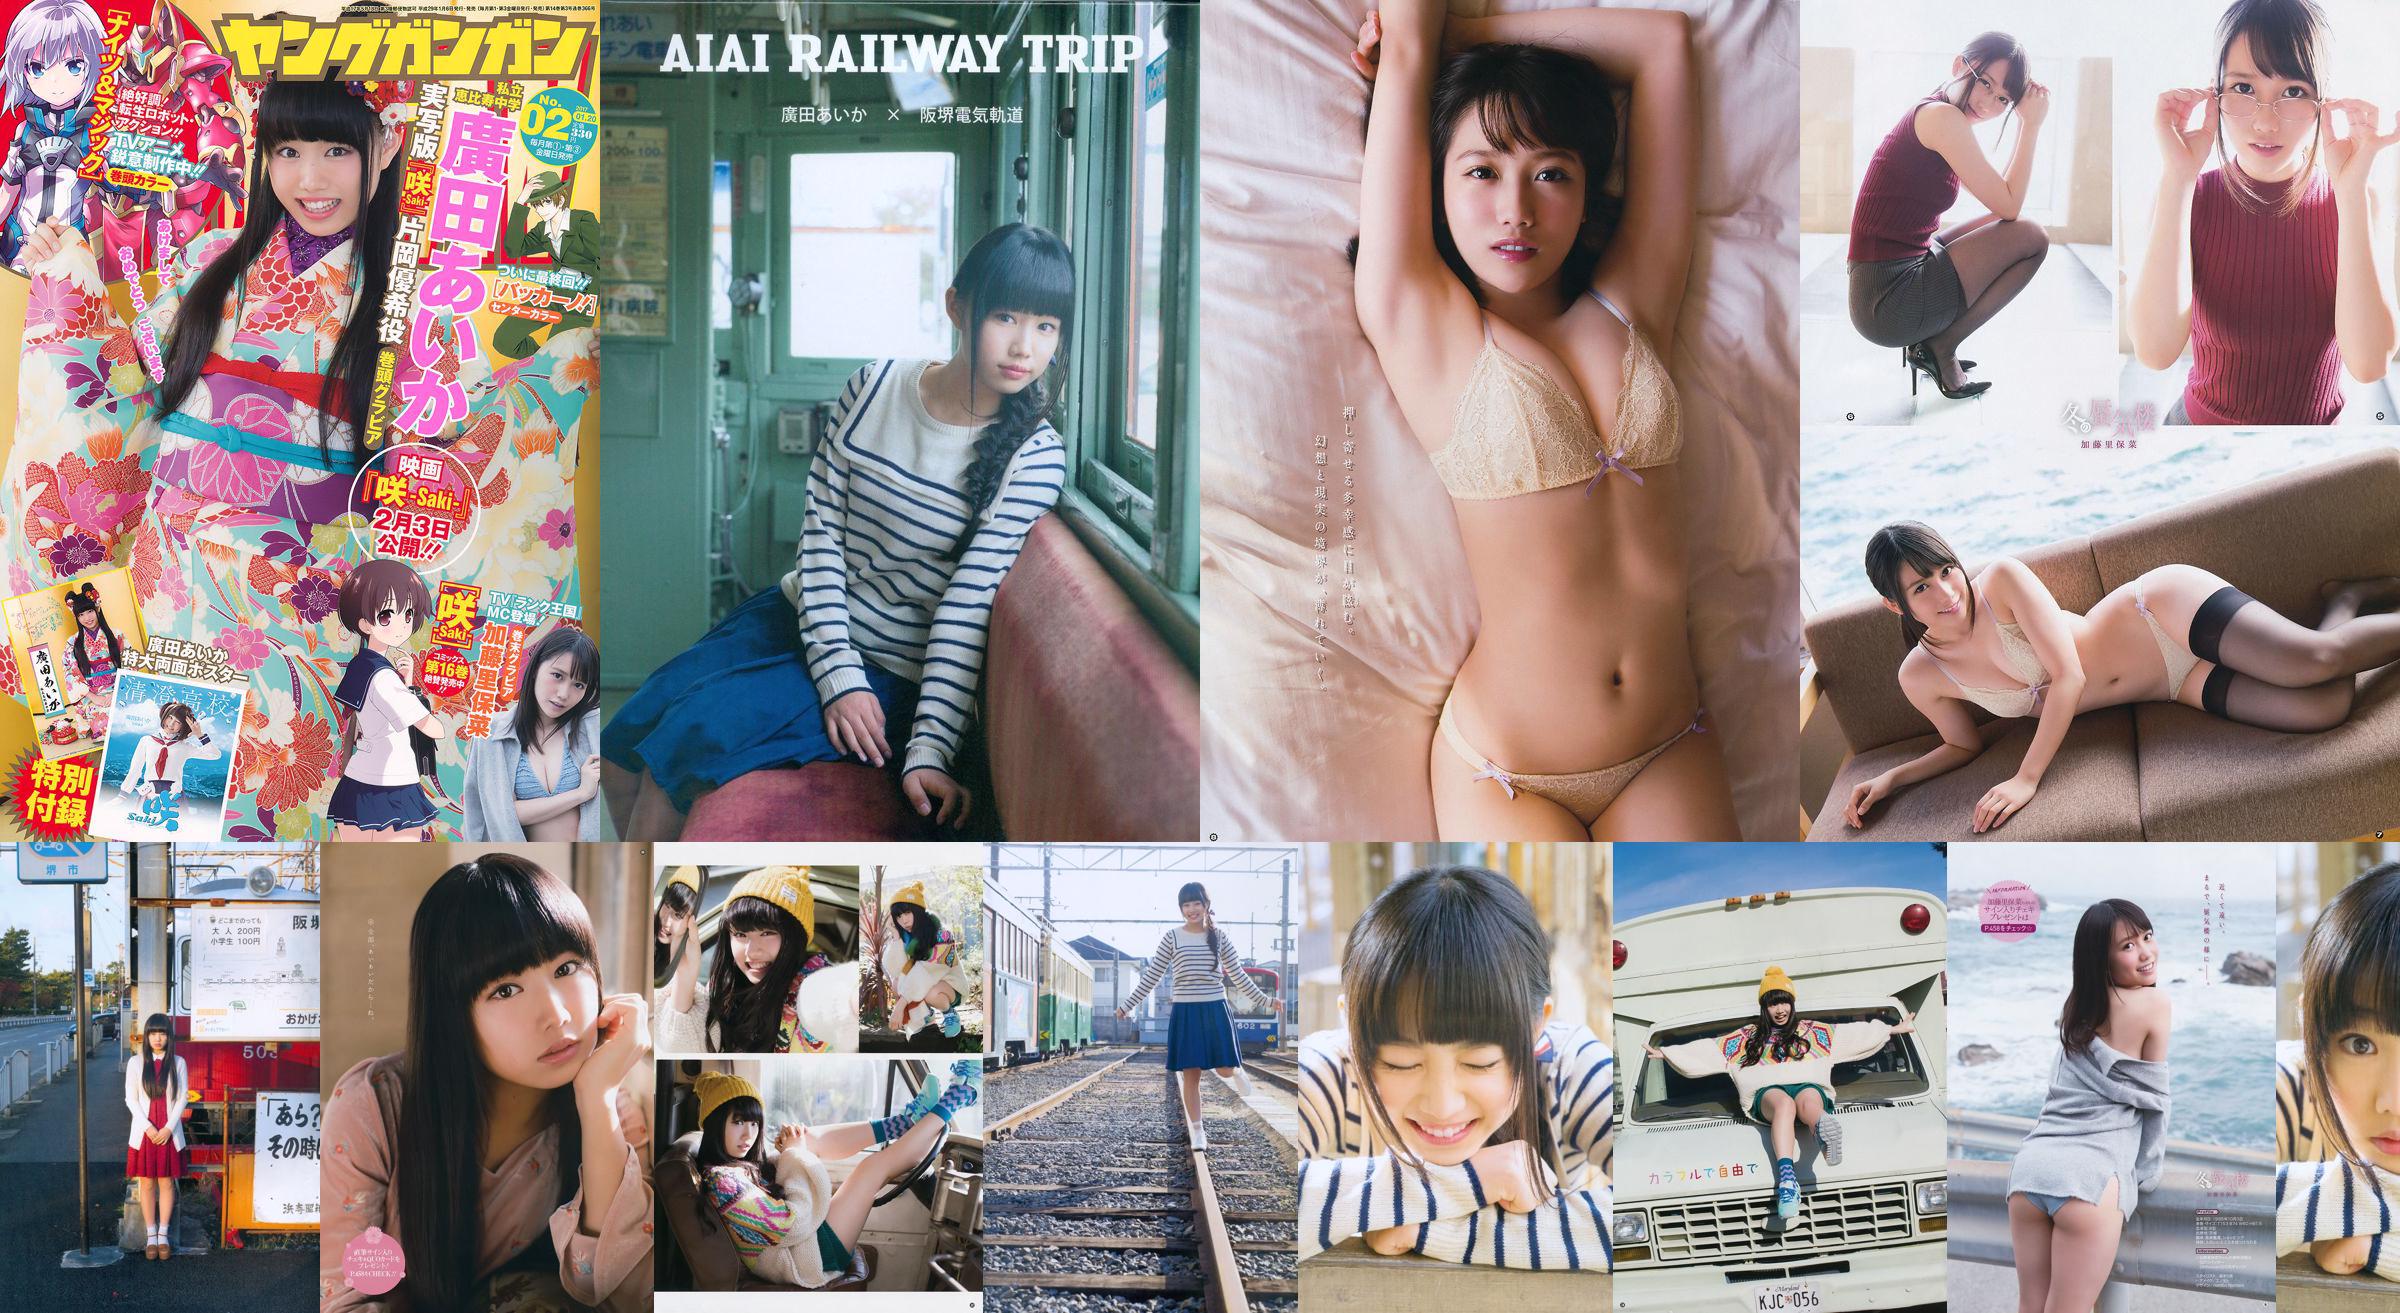 Hirota Aihua / Hirota Aika "AIAI RAILWAY TRIP" foto-dvd-boek [PB] No.5b7a1a Pagina 15